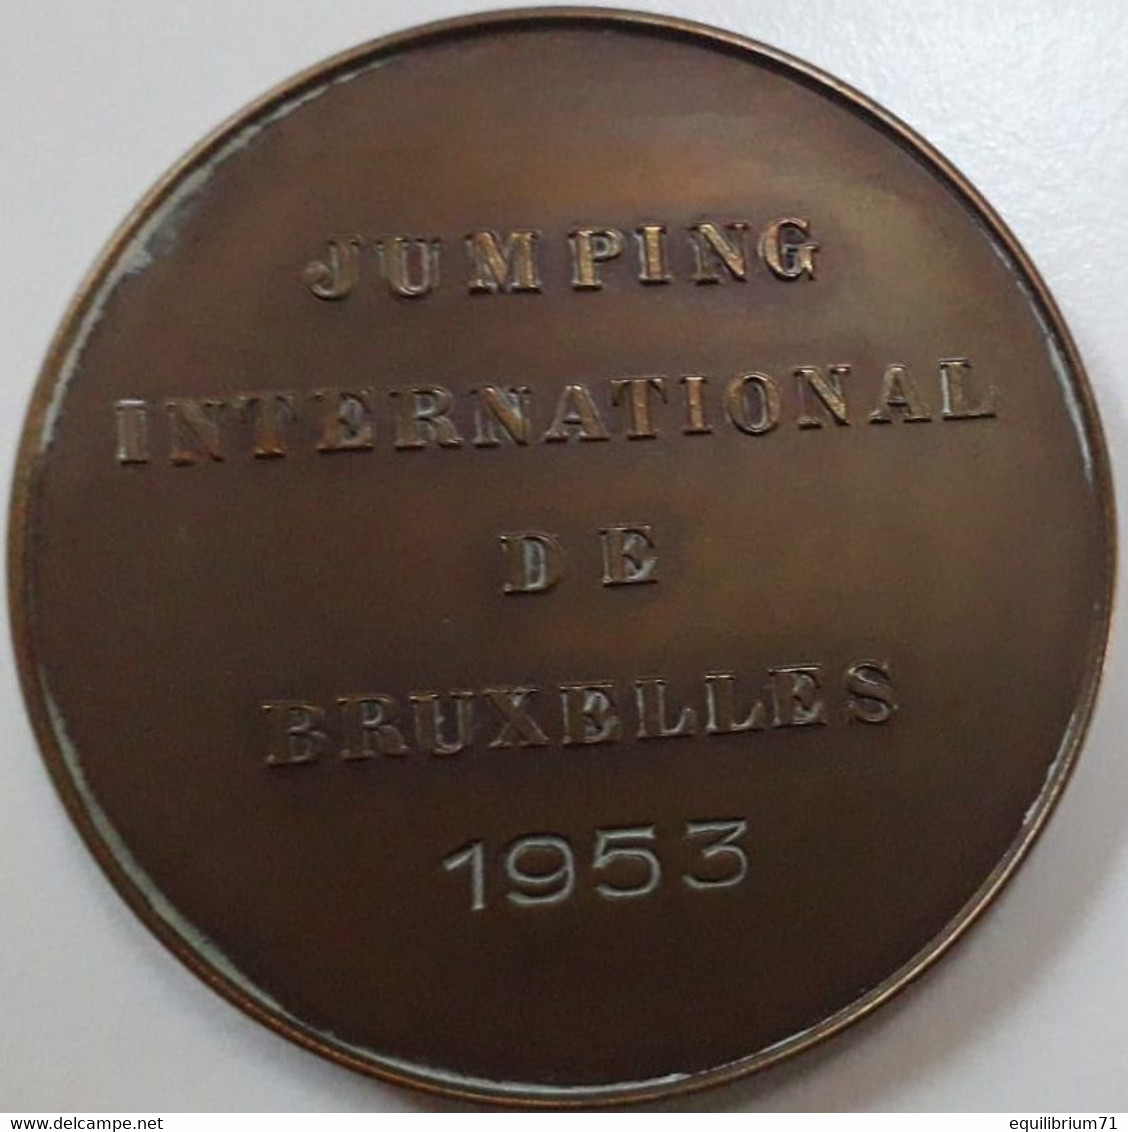 Médaille De Table En Bronze - Baudouin - Jumping International De Bruxelles - 1953 - Signé C. Van Dionant -  Gr - Adel